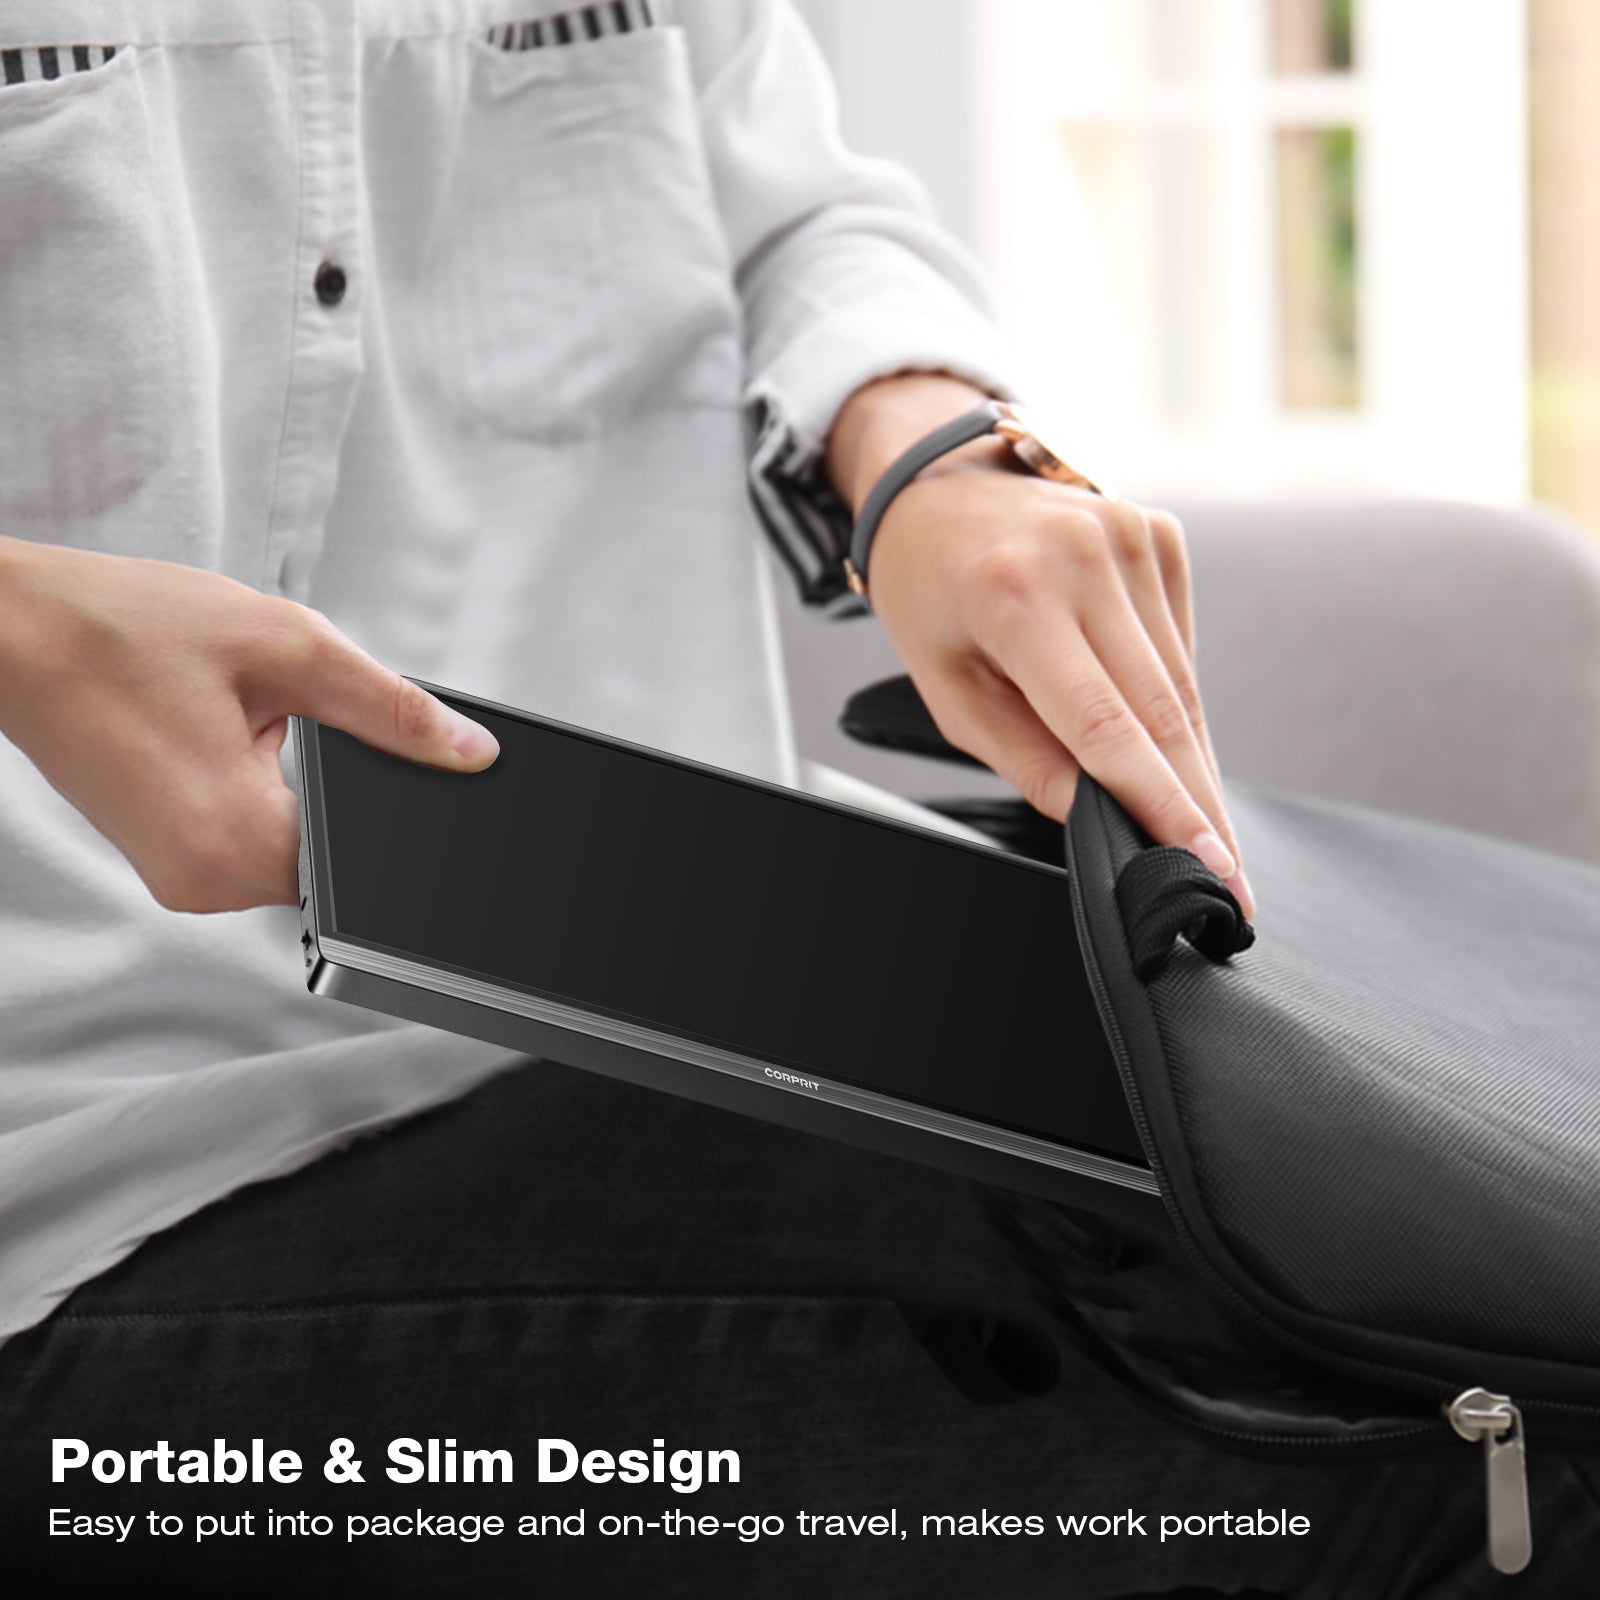 Moniteur Portable, Corprit D153 15.6" 1080P 100% sRGB Portable USB C Moniteur Externe